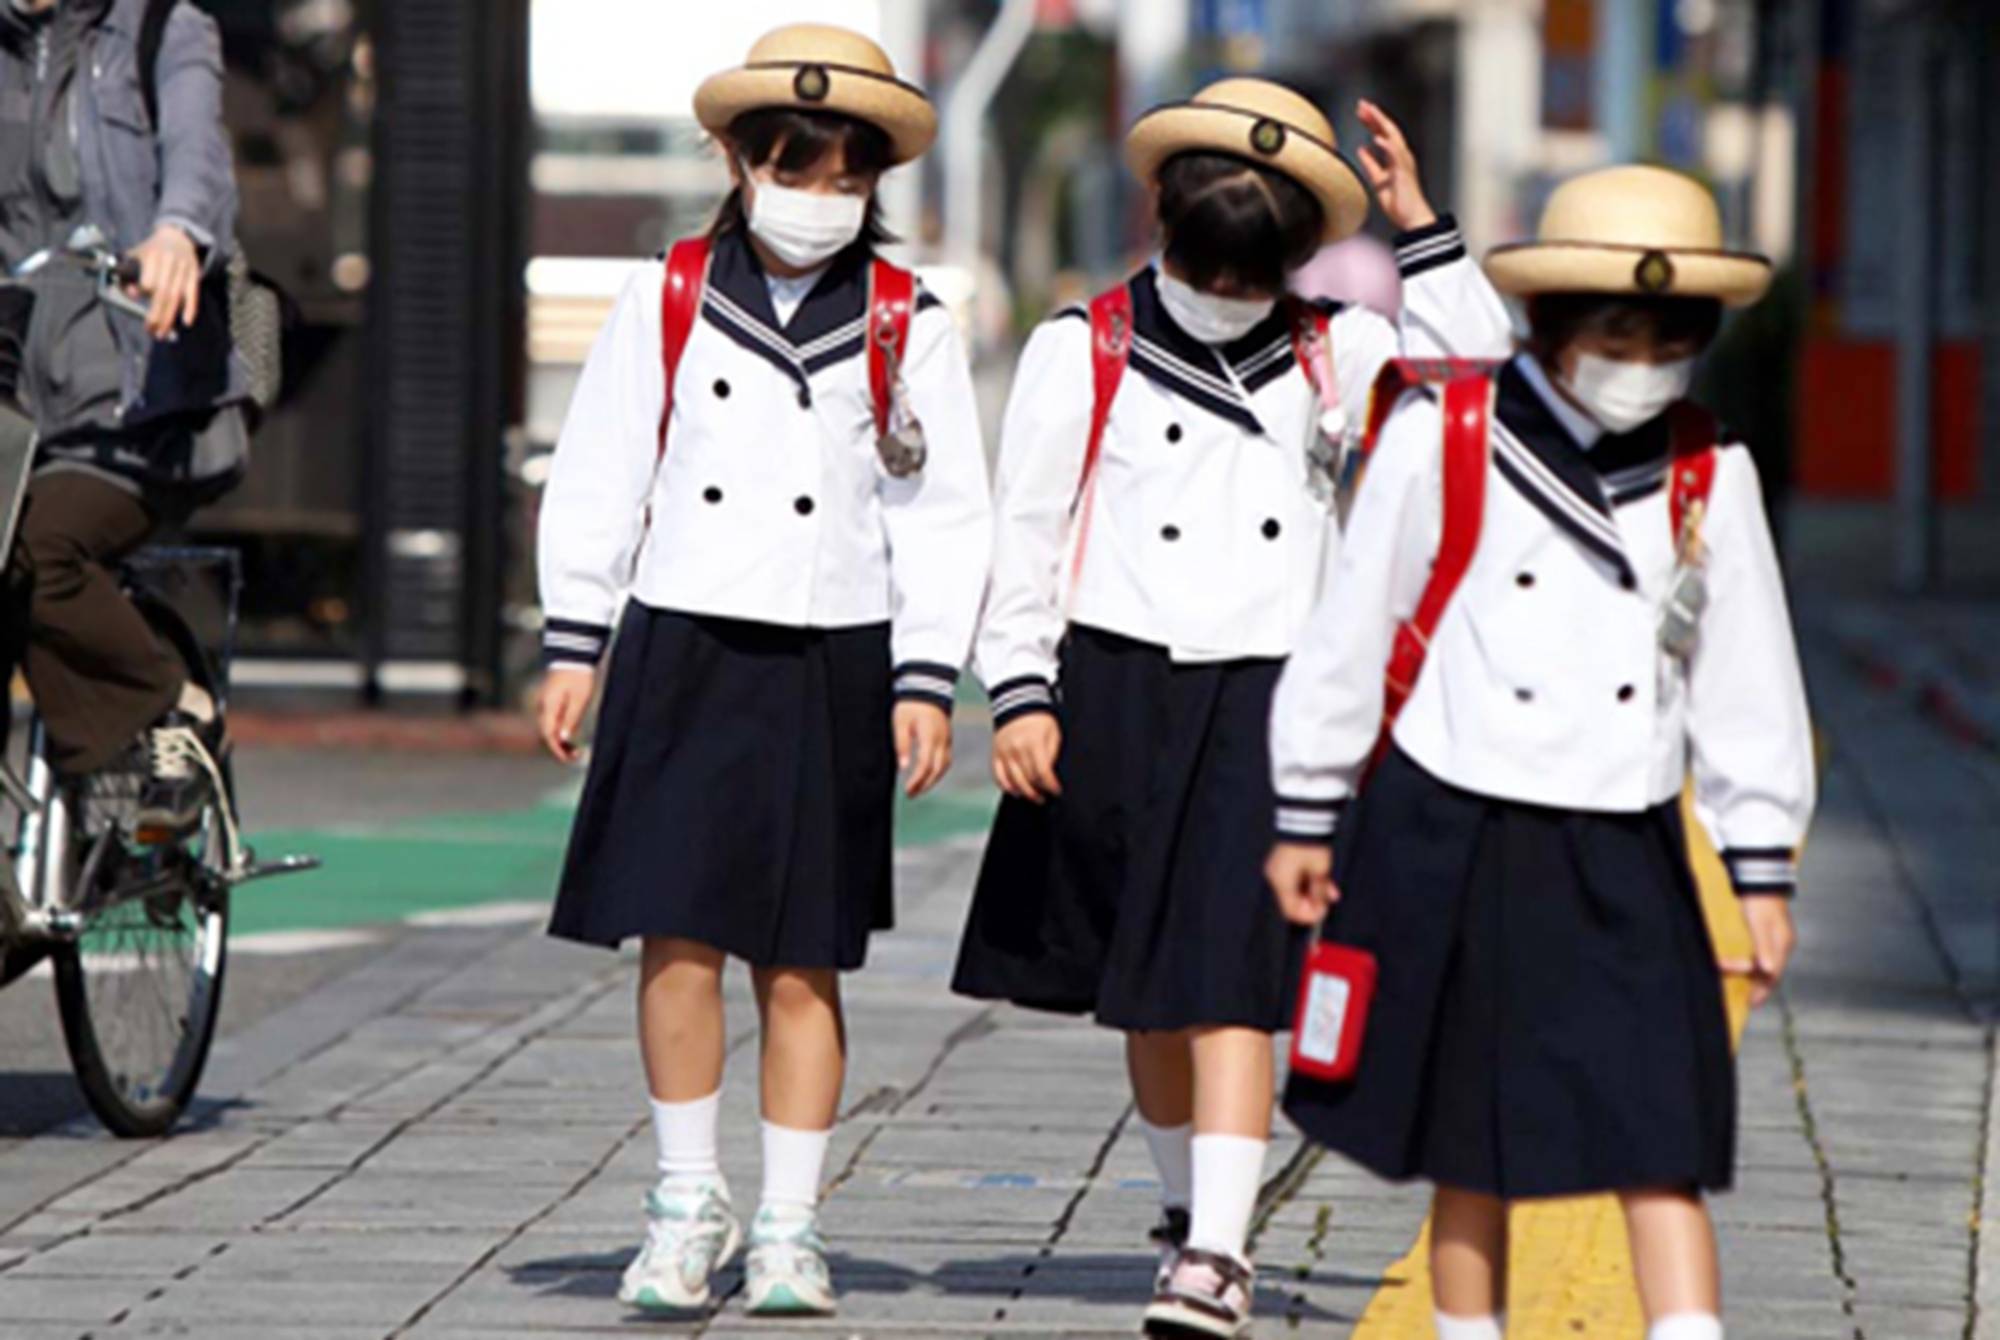 日本校服"取消性别差异",裙子变裤子学生难接受,中国网友乐了